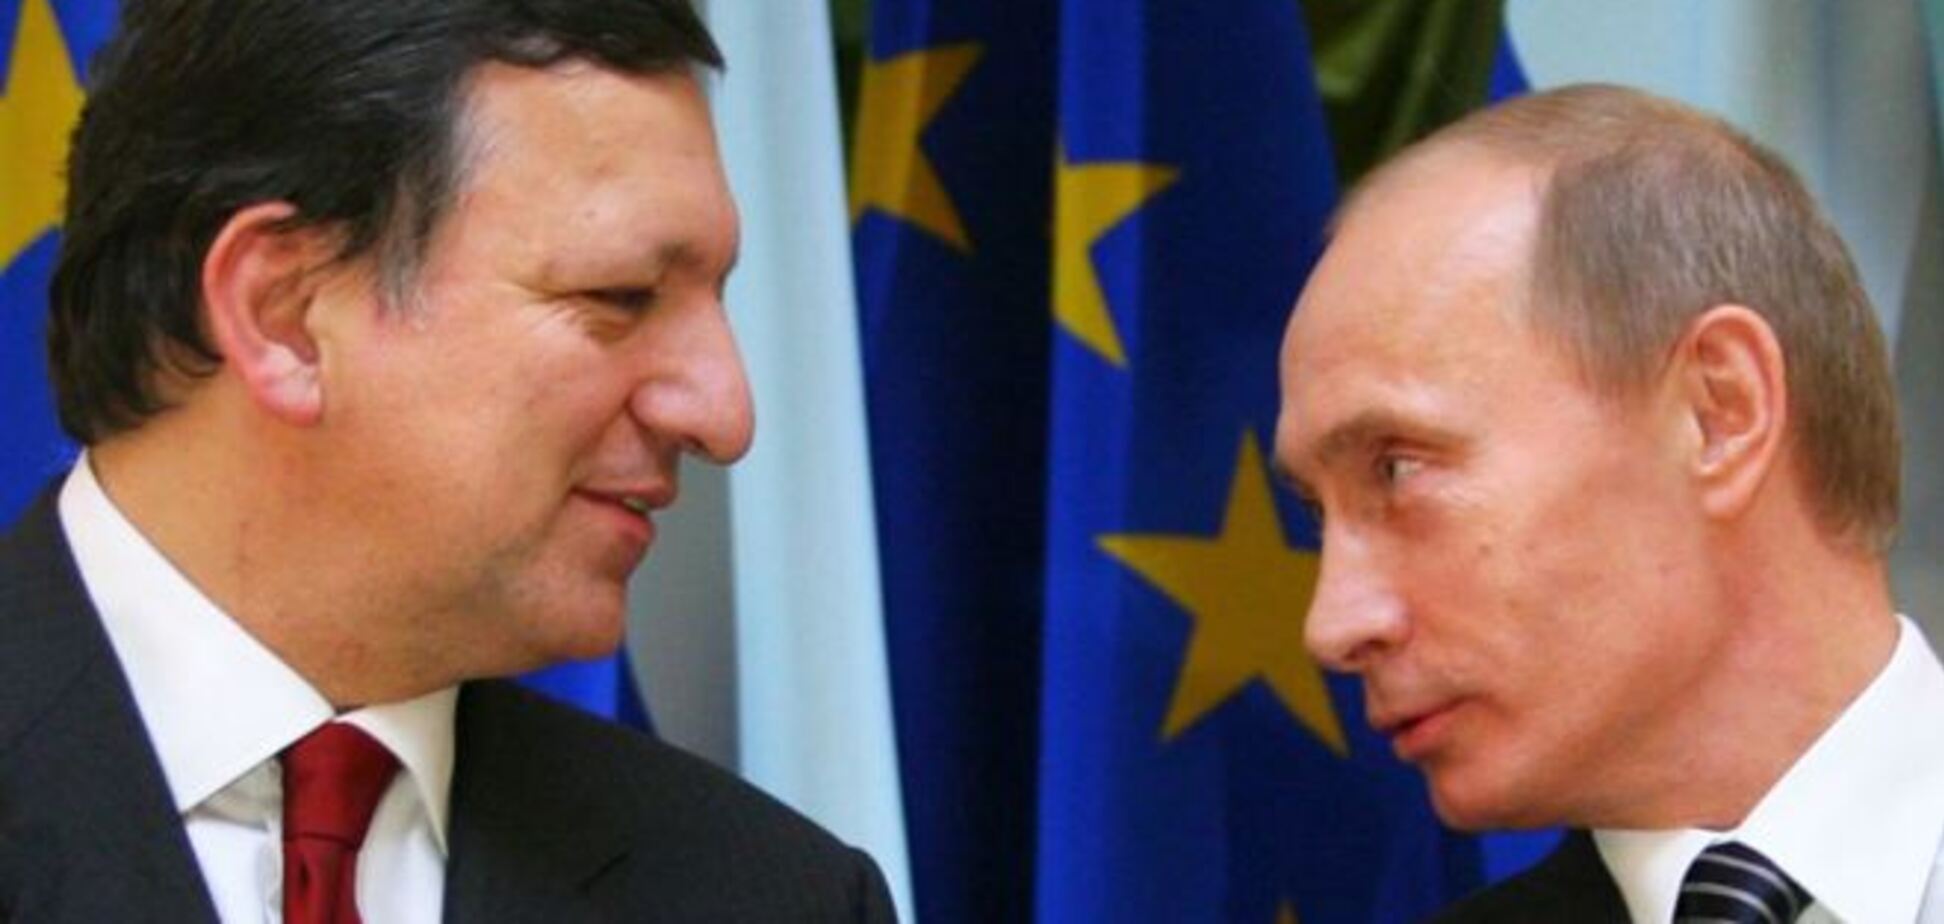 Путин до 2012 года был согласен на вступление Украины в ЕС - Баррозу